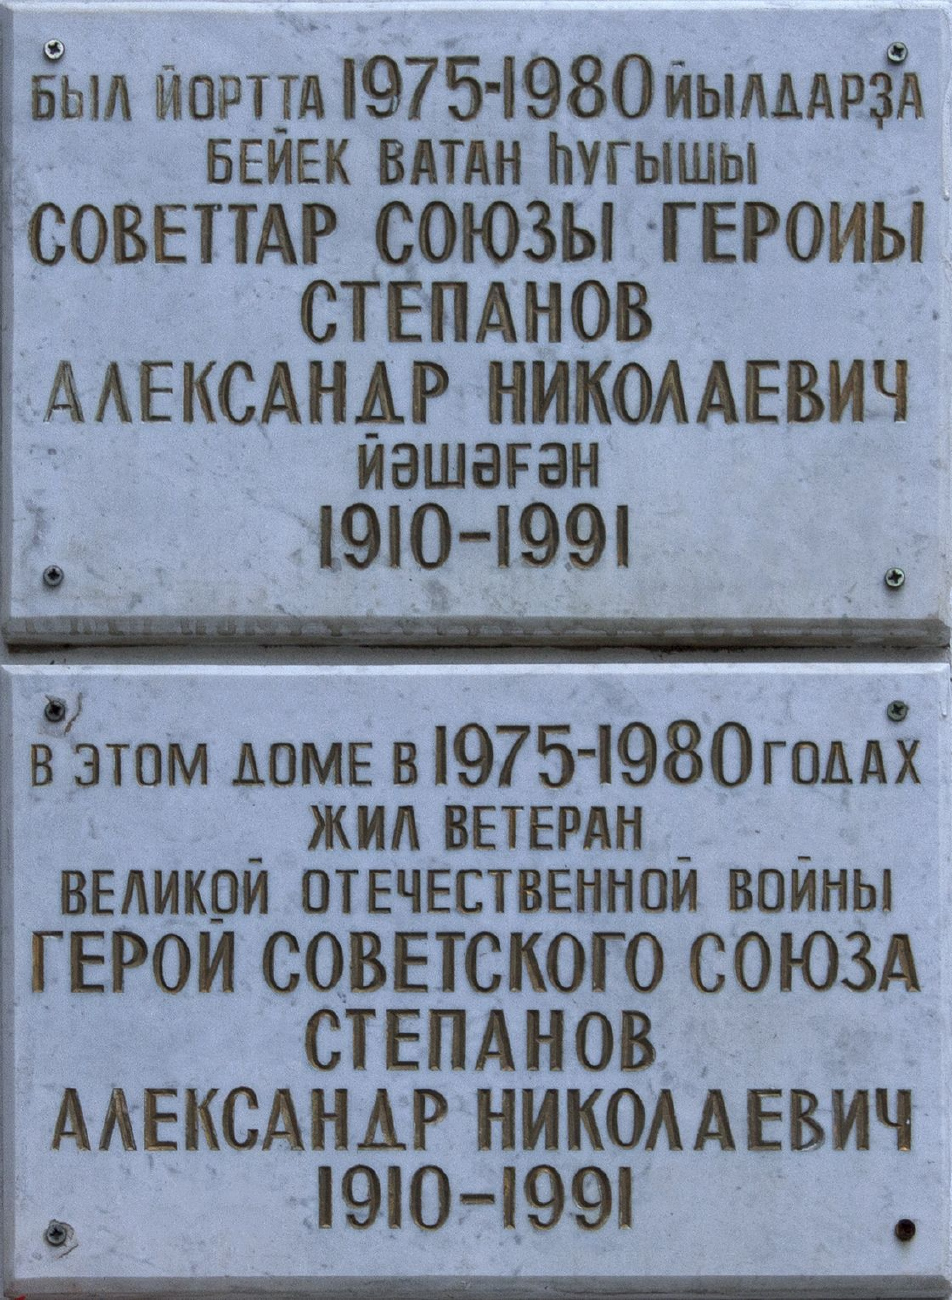 Ufa, Бульвар Ибрагимова, 37/1. Ufa — Memorial plaques